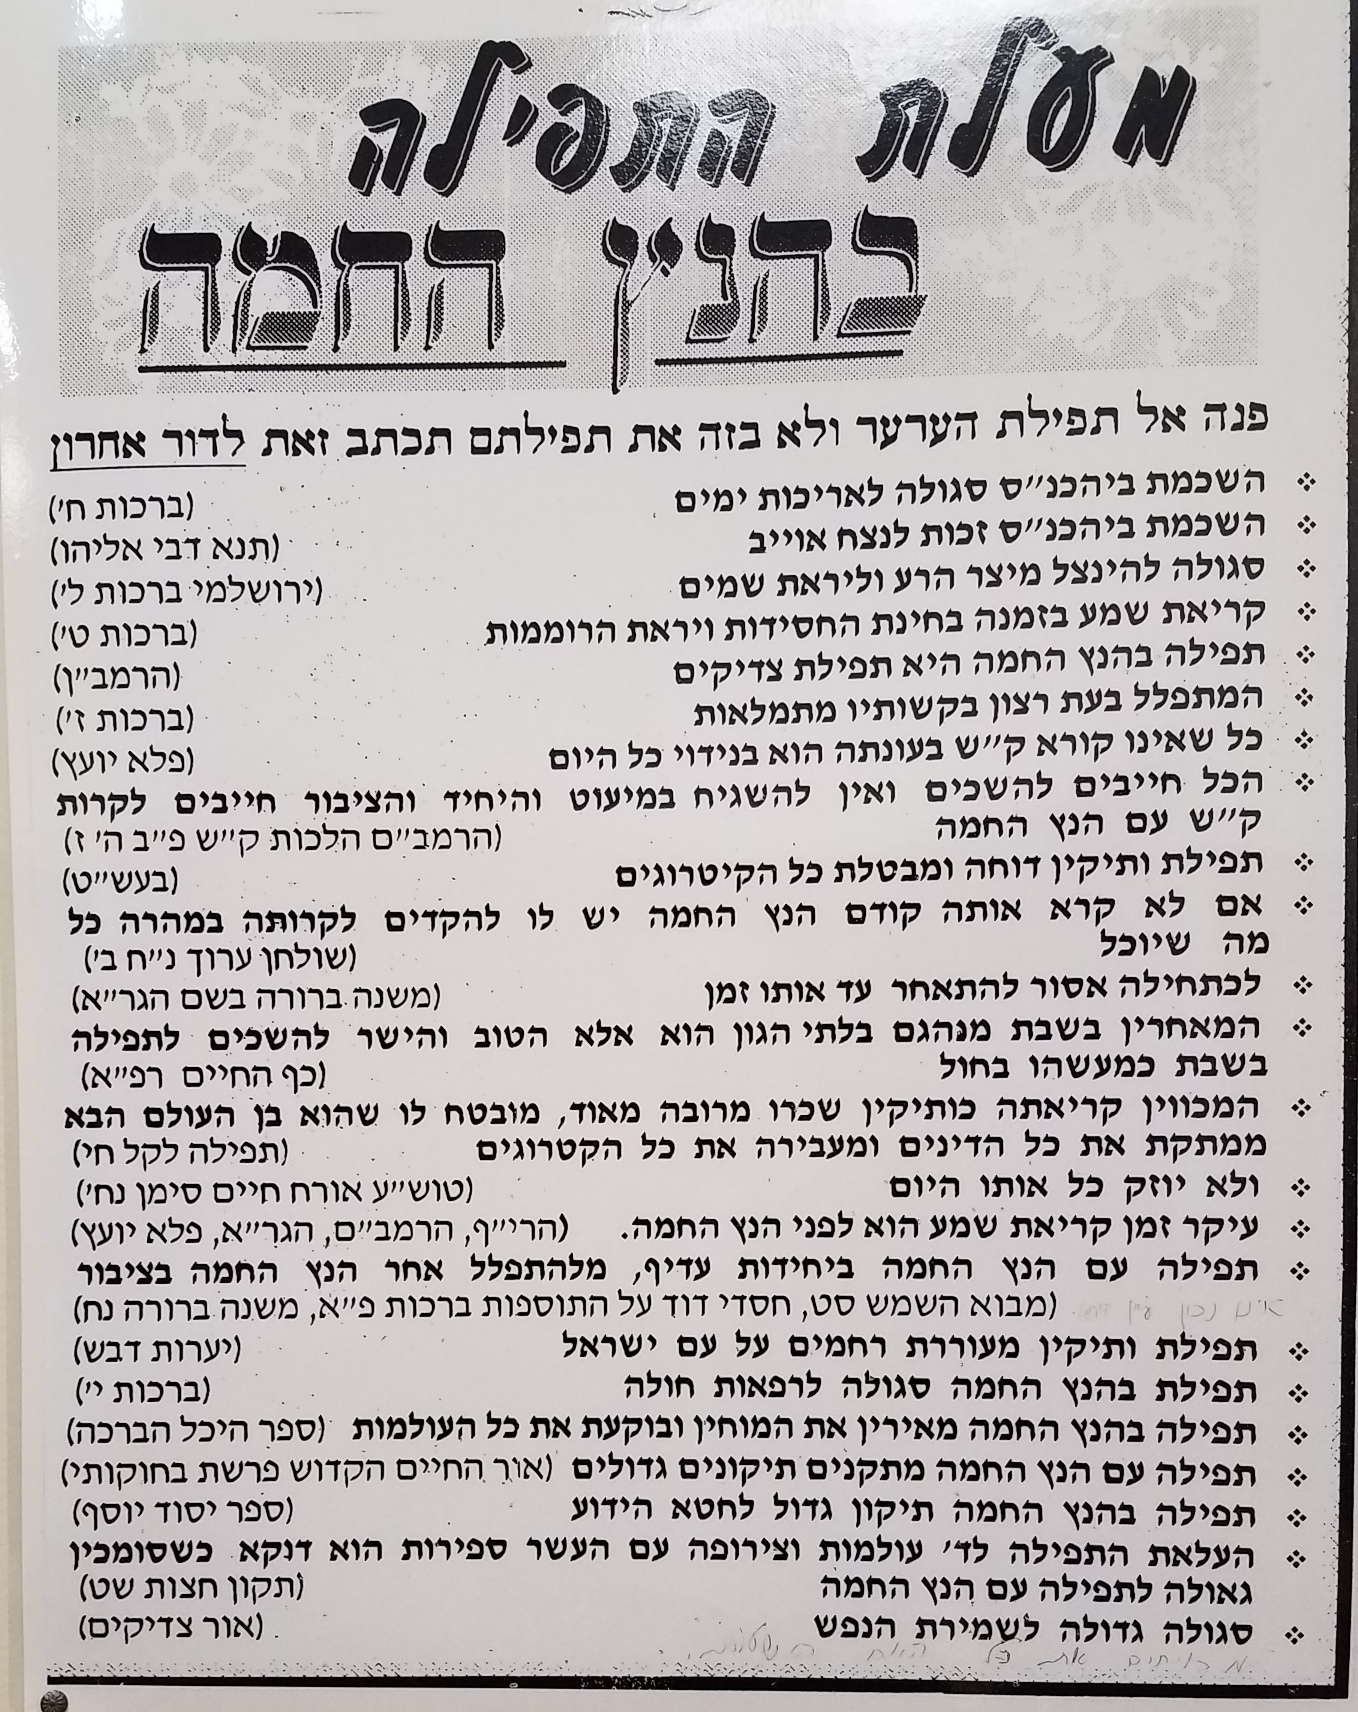 Gemara Chazara Chart